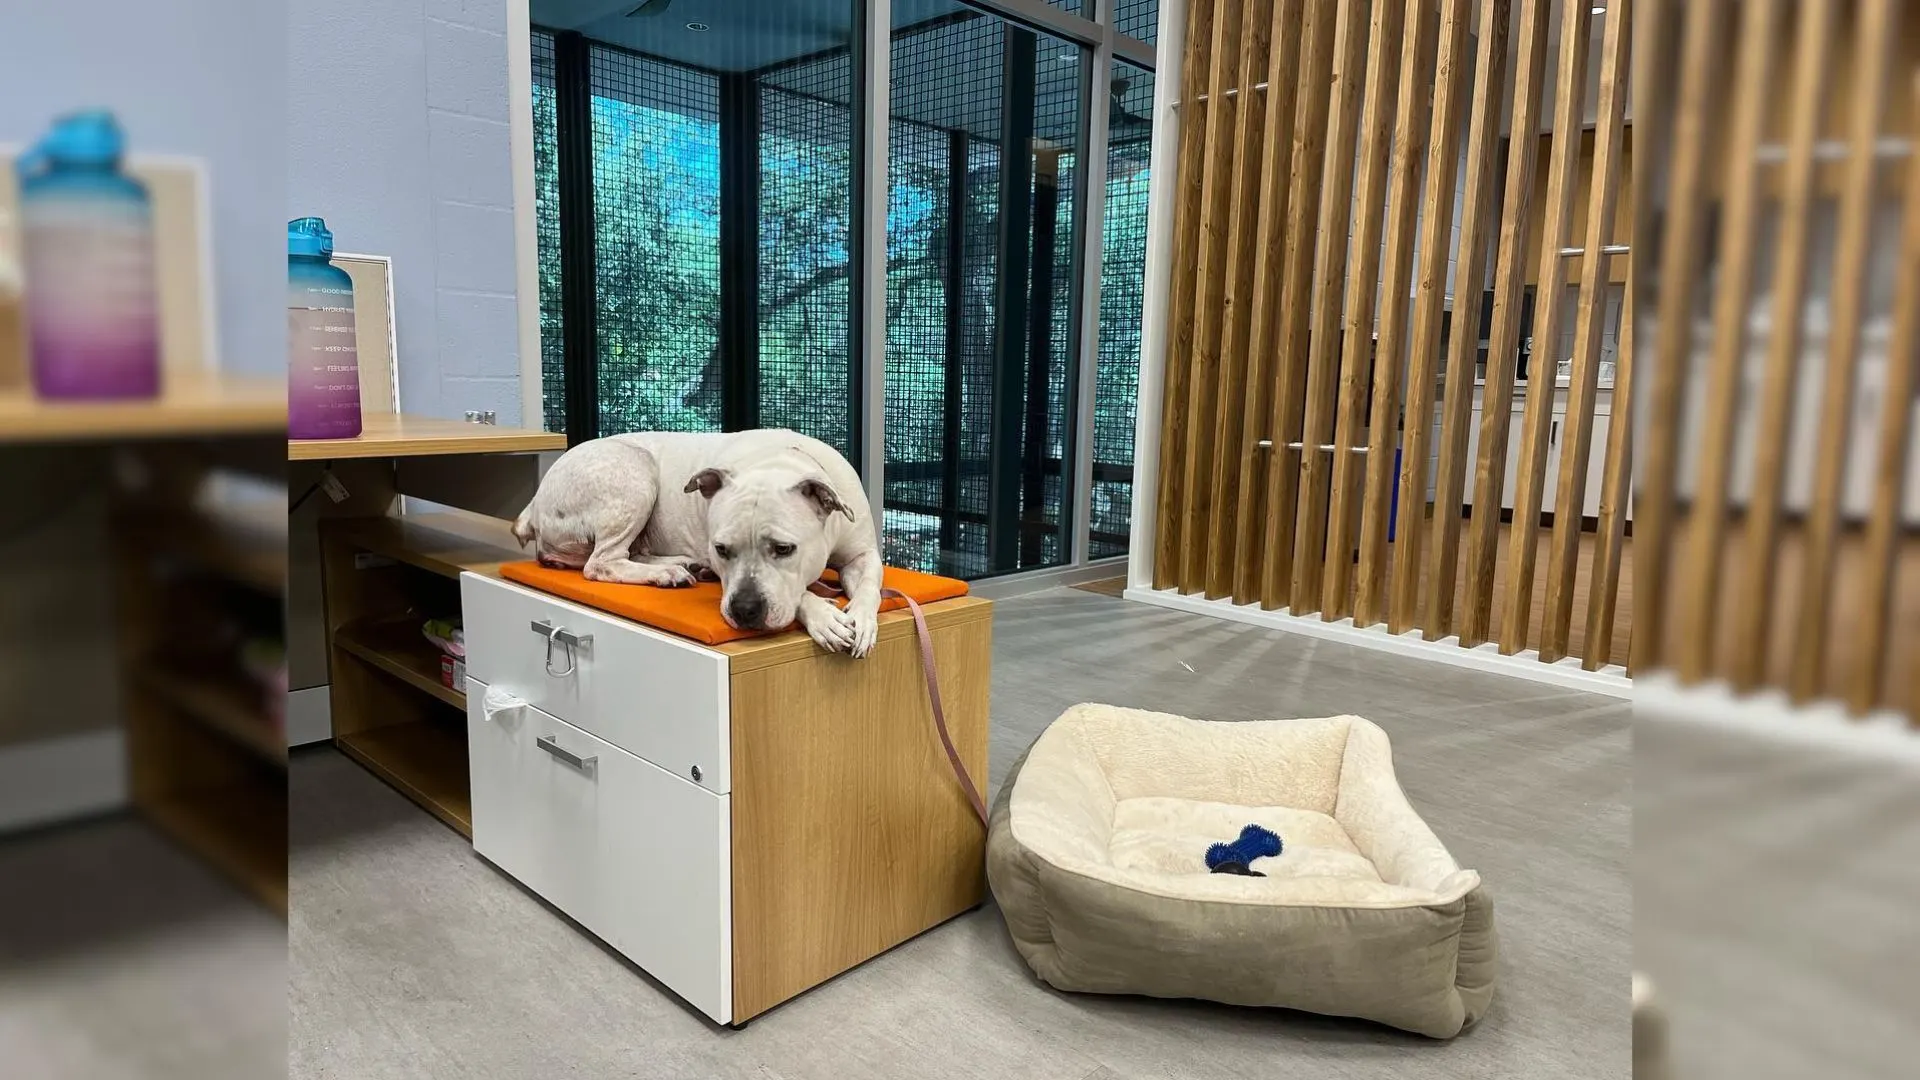 Los trabajadores del refugio se sorprendieron al descubrir que el lugar favorito para dormir de este perro es un escritorio